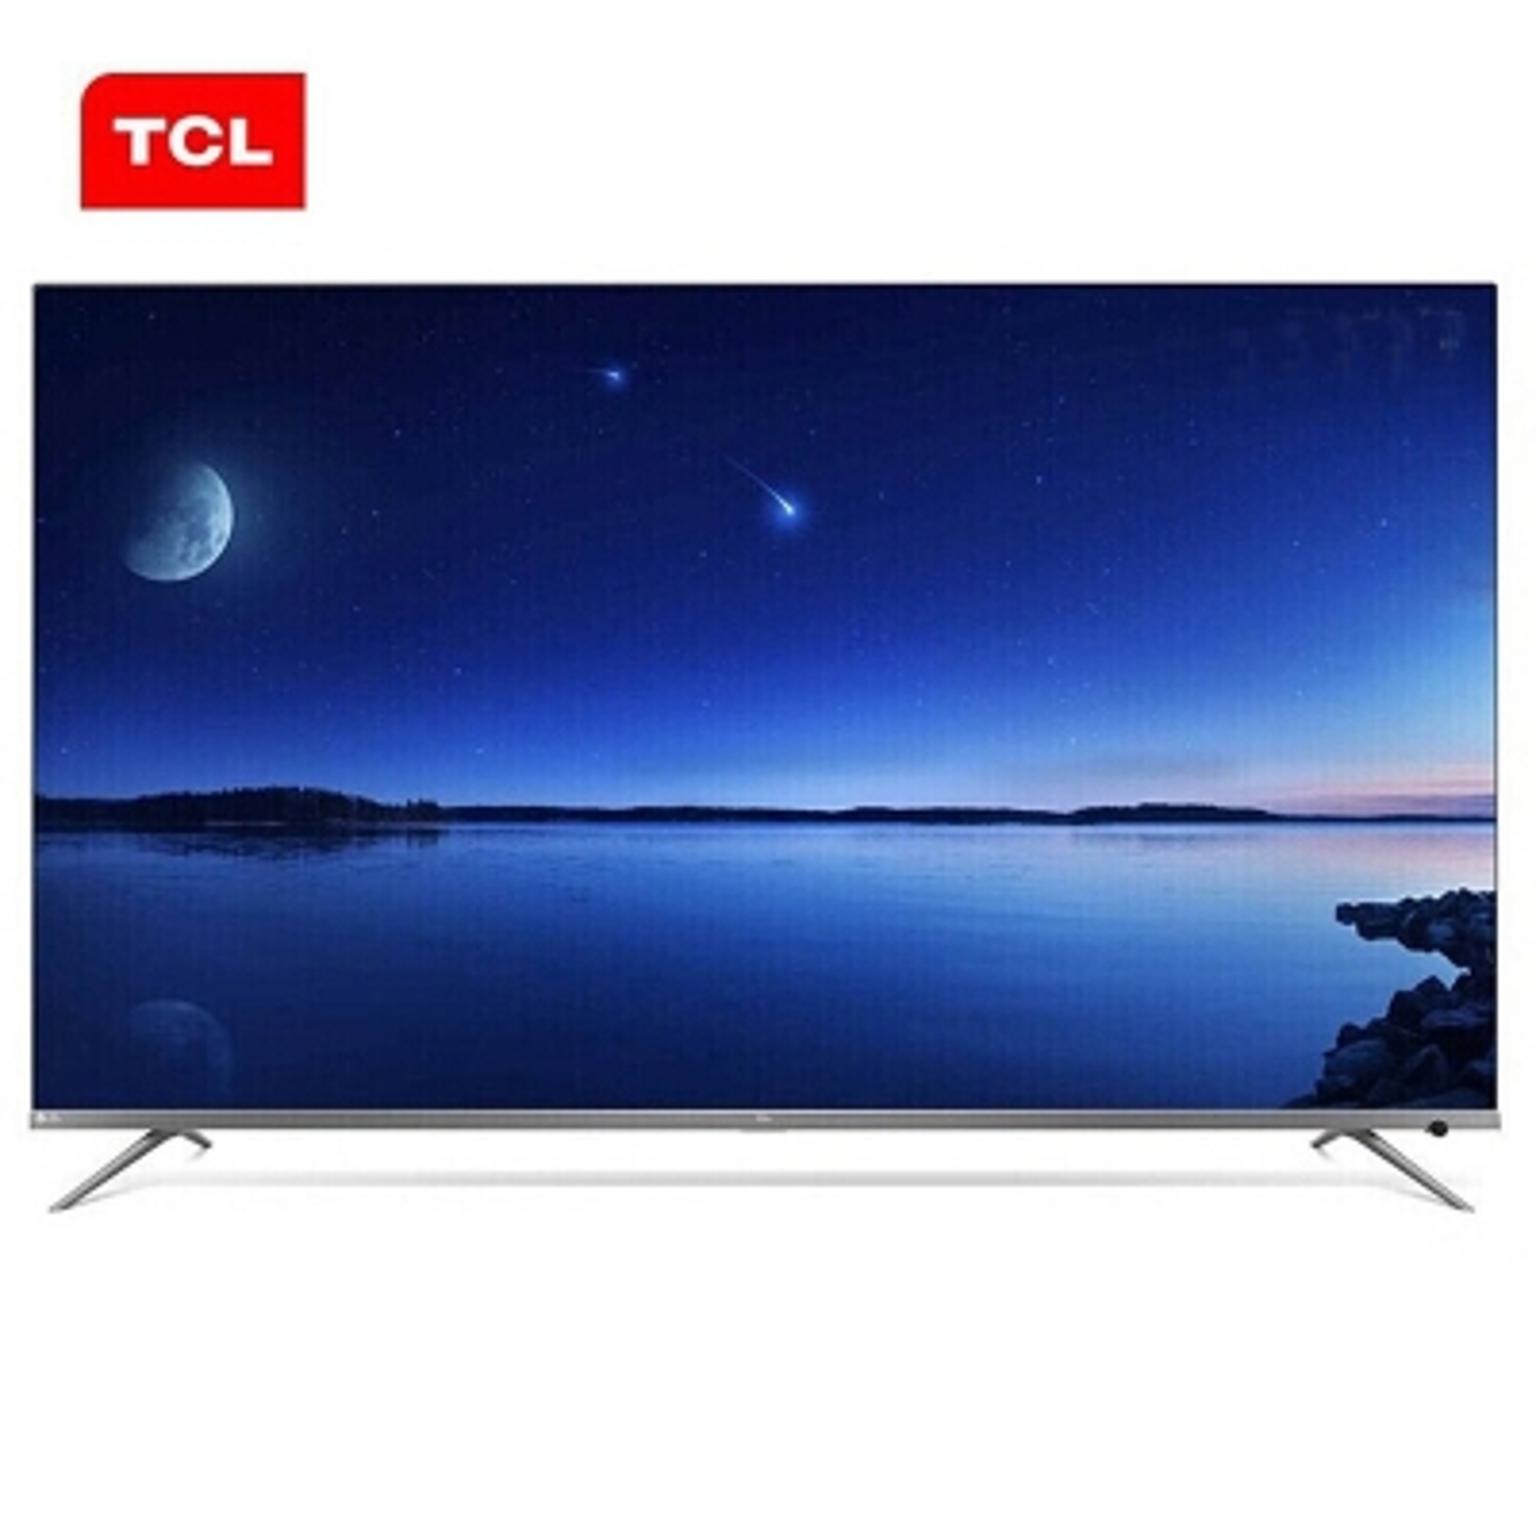 tcl电视机 65p9液晶电视机 65寸4k超高清液晶电视机 支持有线/无线